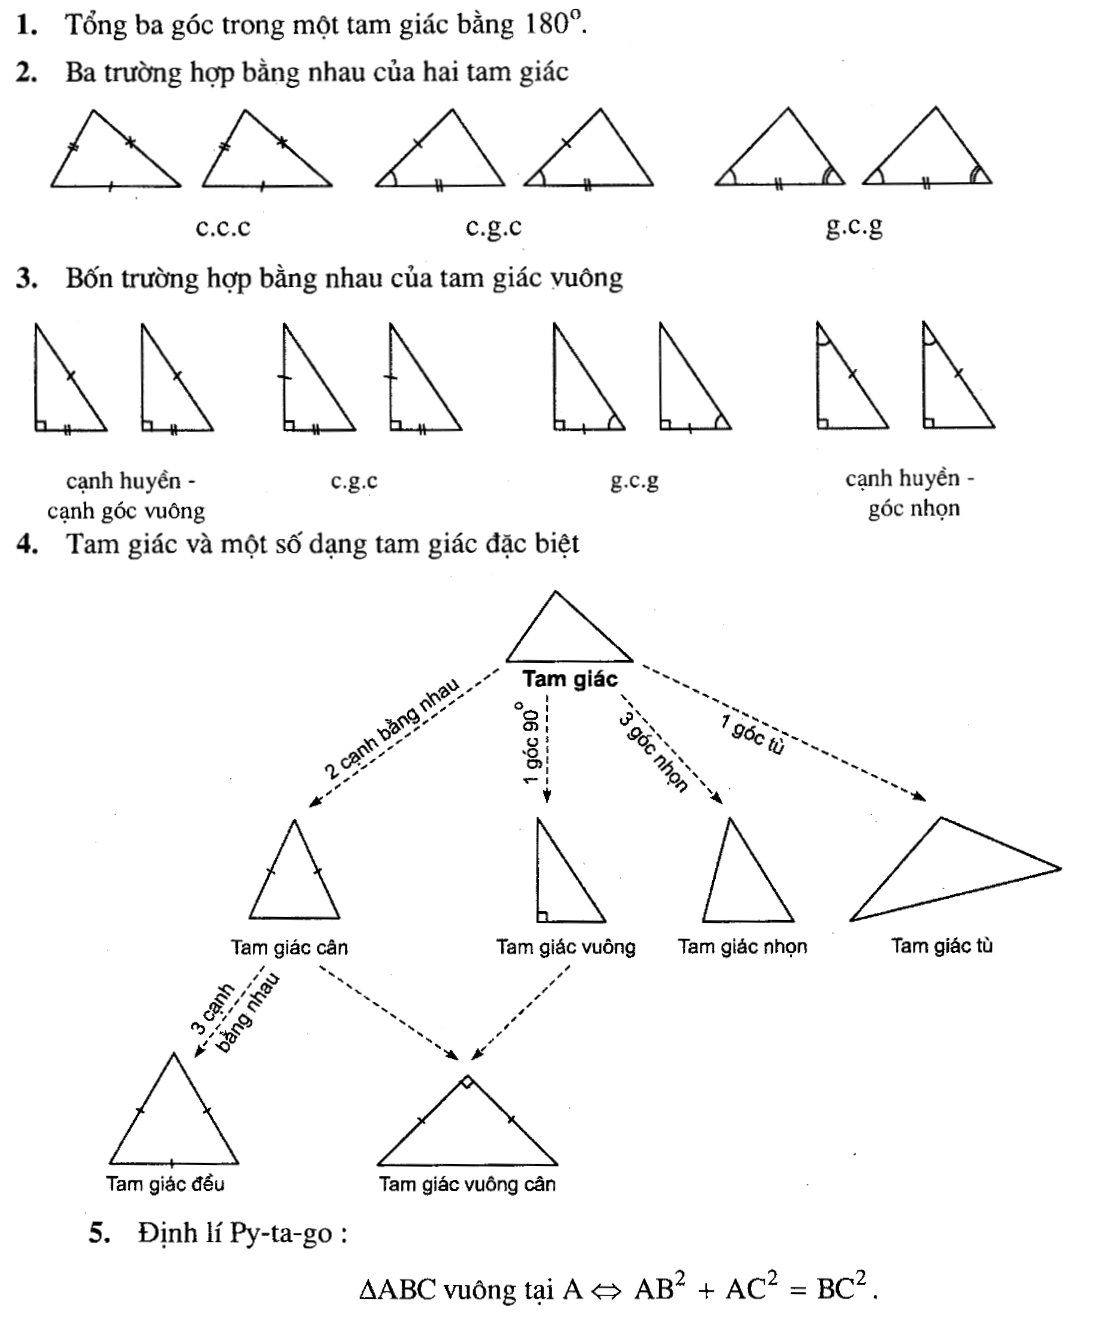 Bảng biểu diễn các trường hợp tam giác bằng nhau